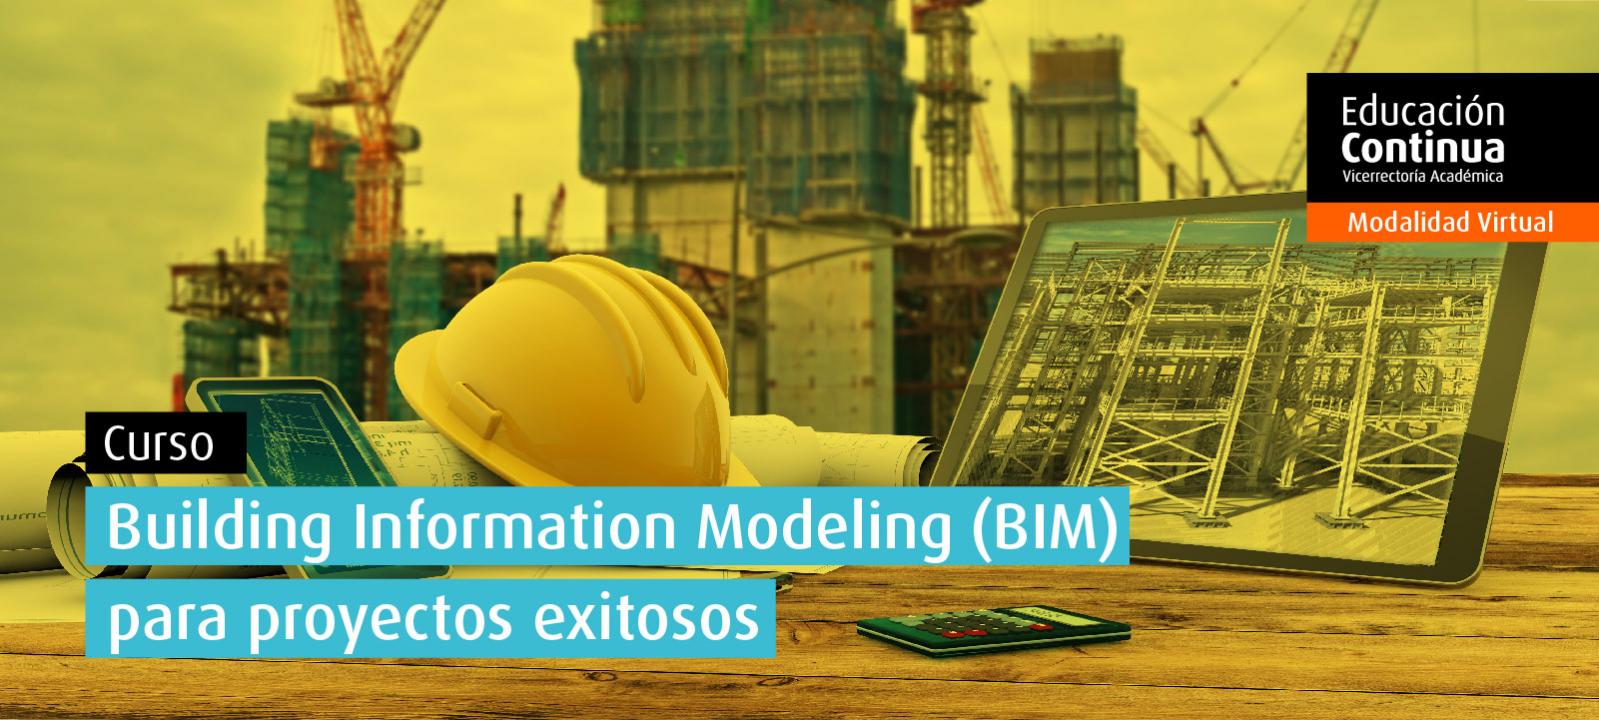 Curso Building Information Modeling | Uniandes